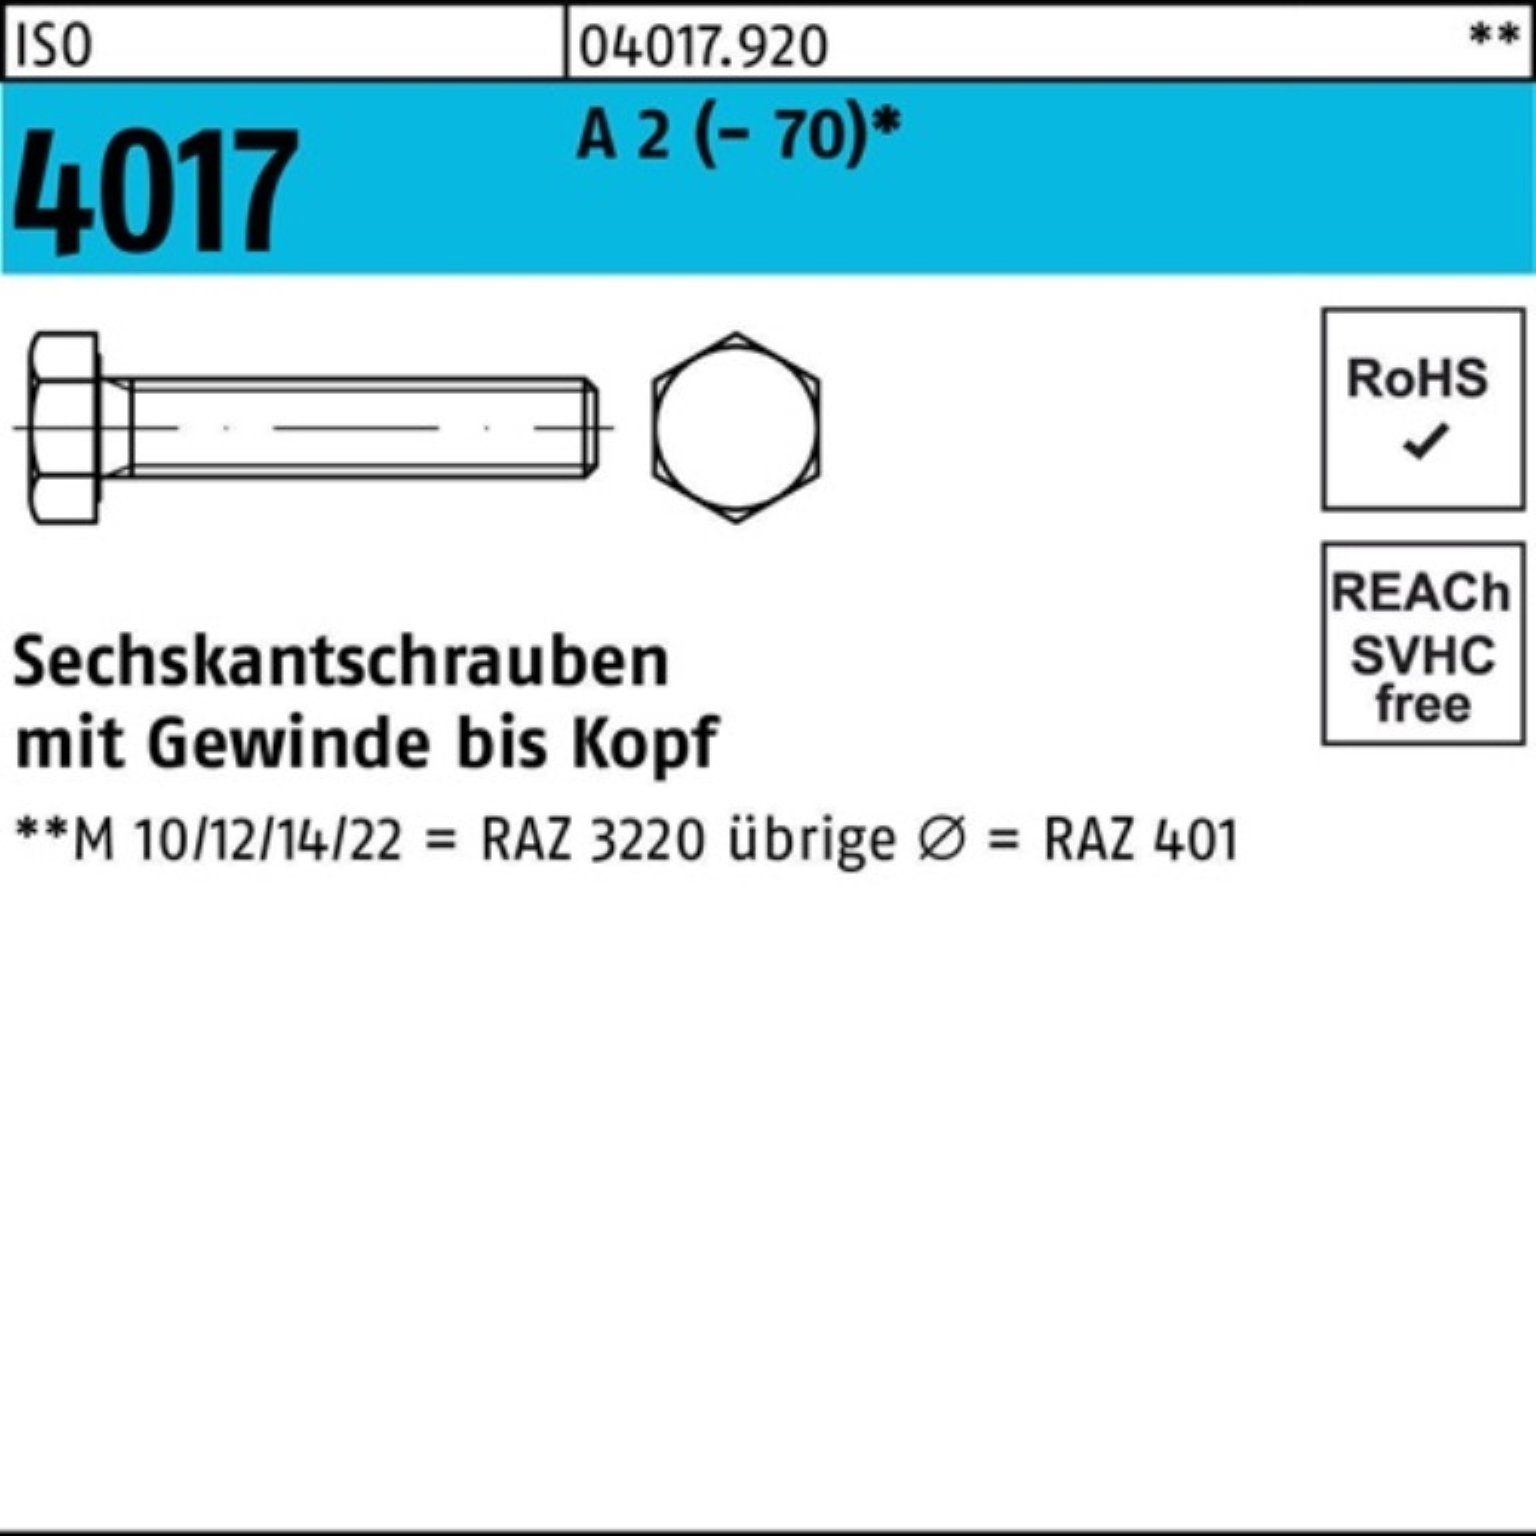 Bufab Sechskantschraube 100er Pack Sechskantschraube ISO 4017 VG M12x 30 A 2 (70) 100 Stück